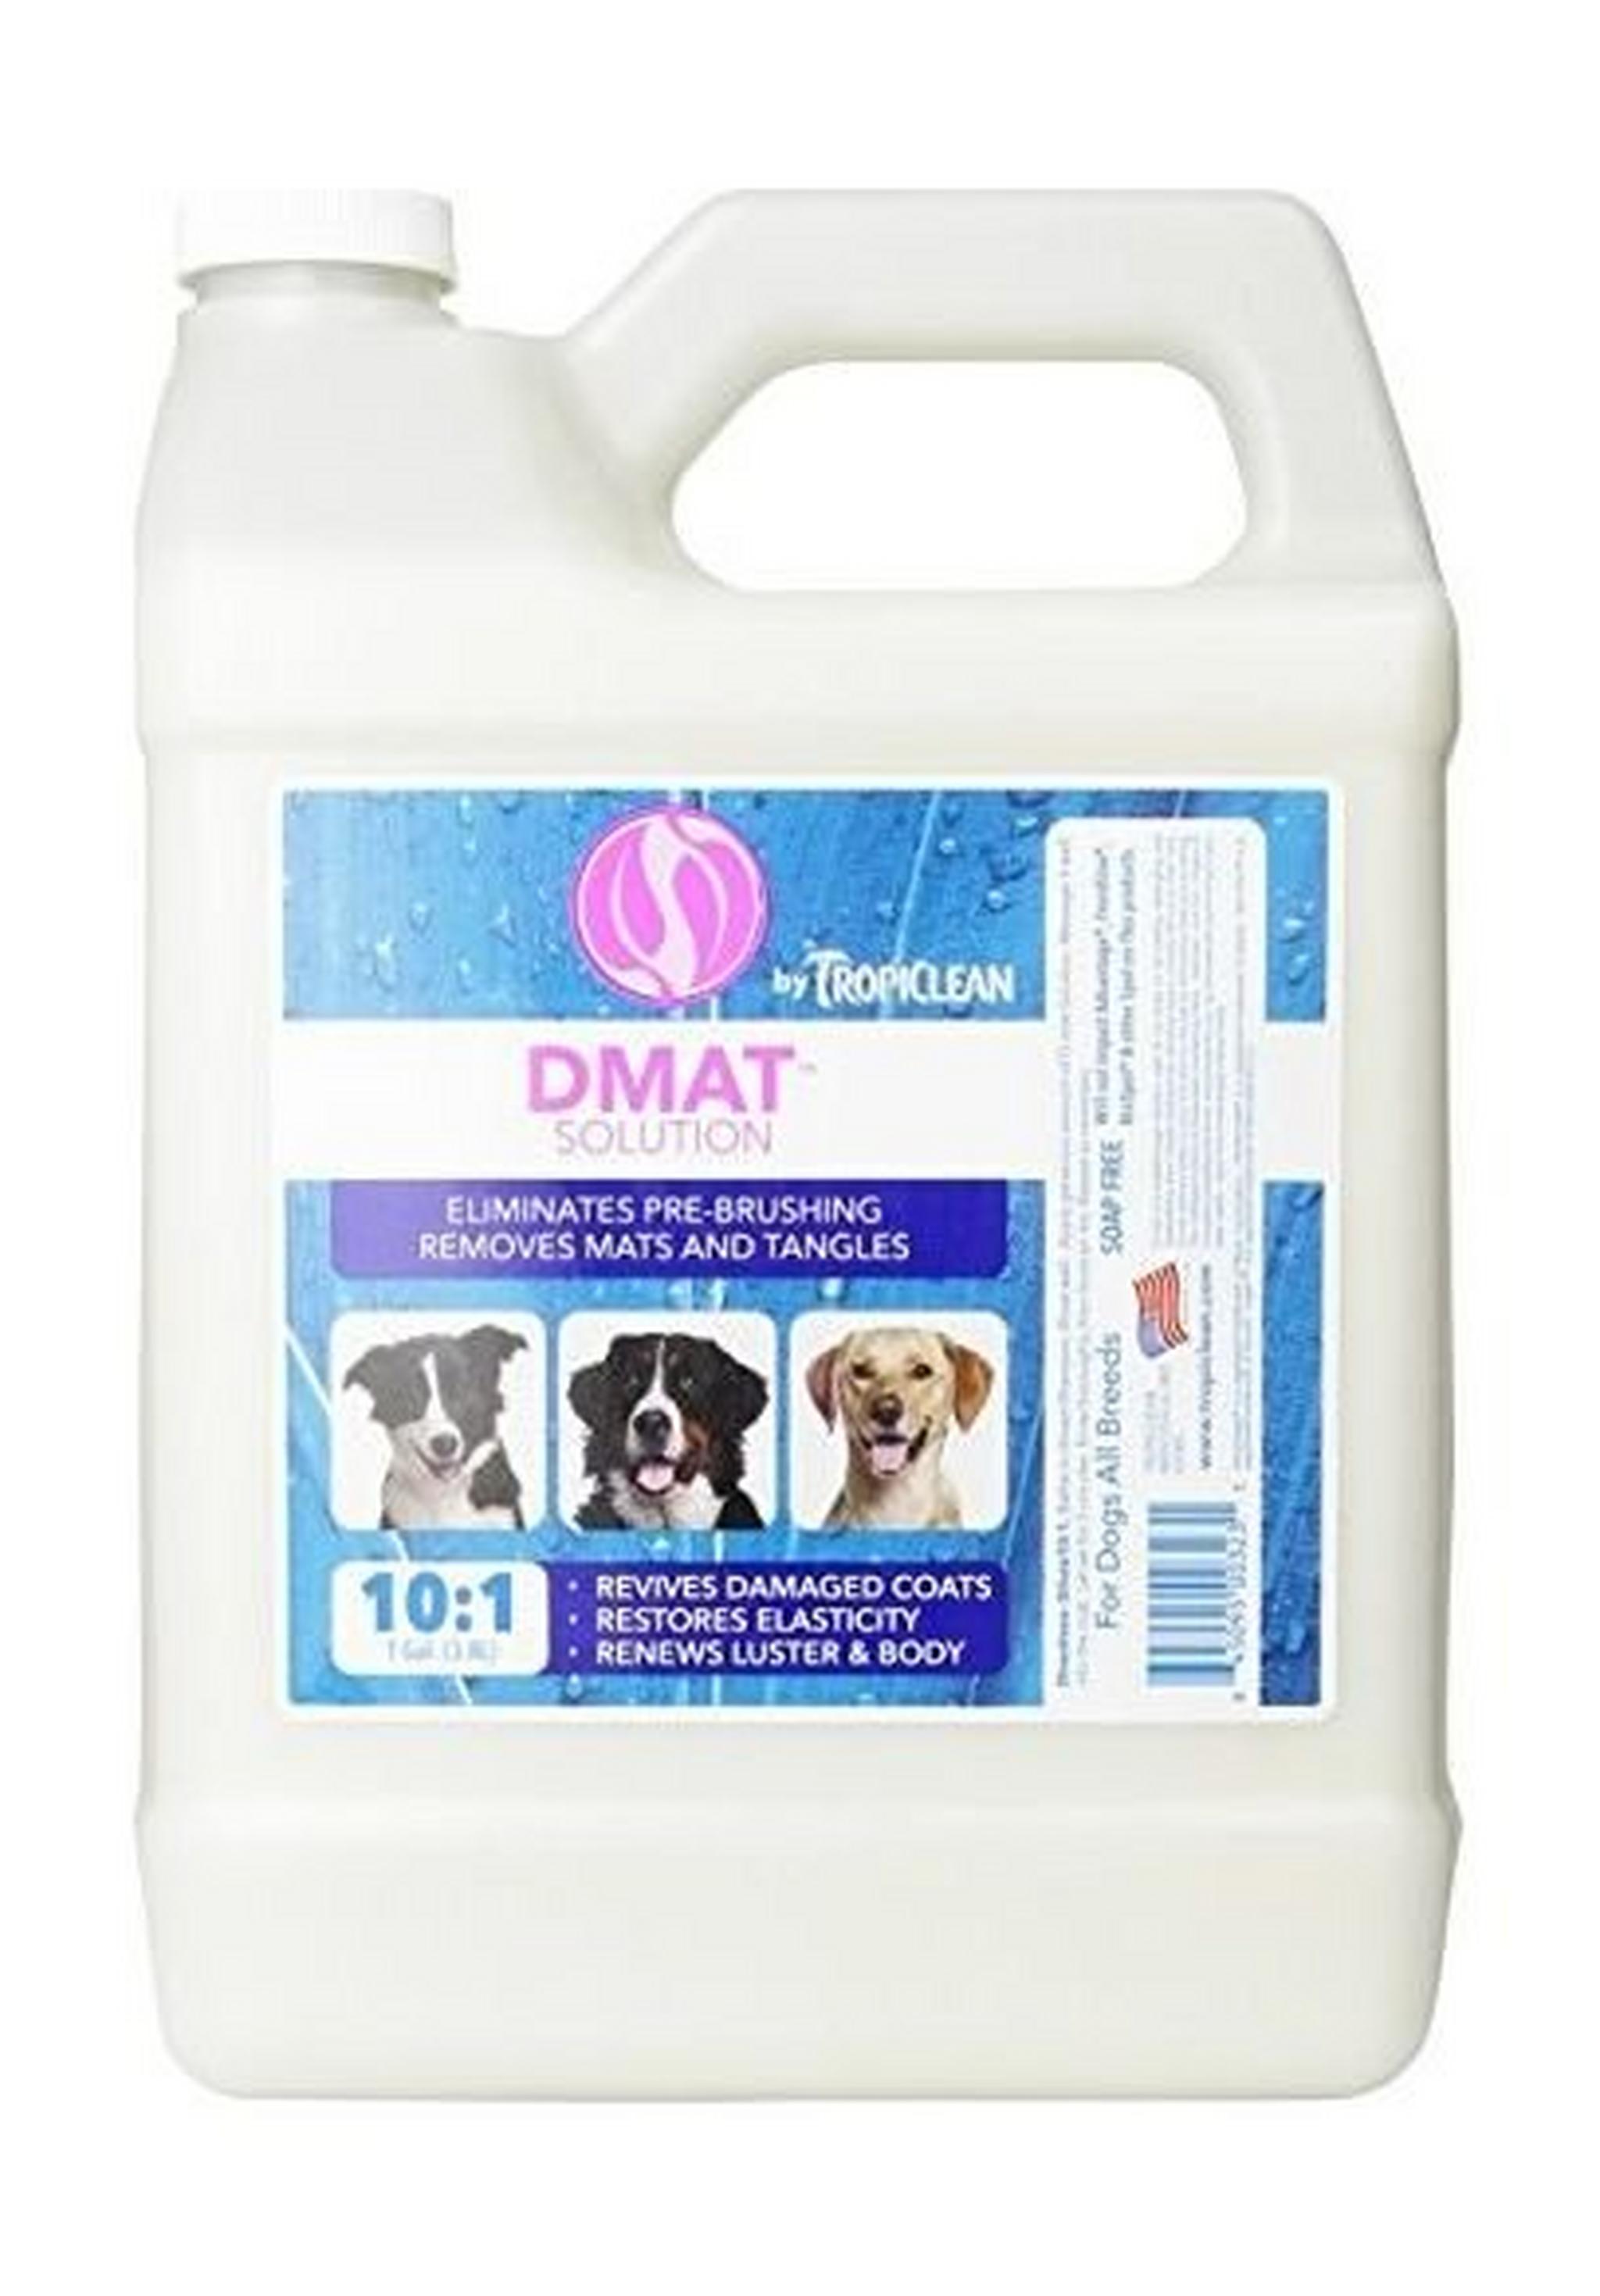 TropiClean iSmart Shampoo & Conditioner - 1 Gallon